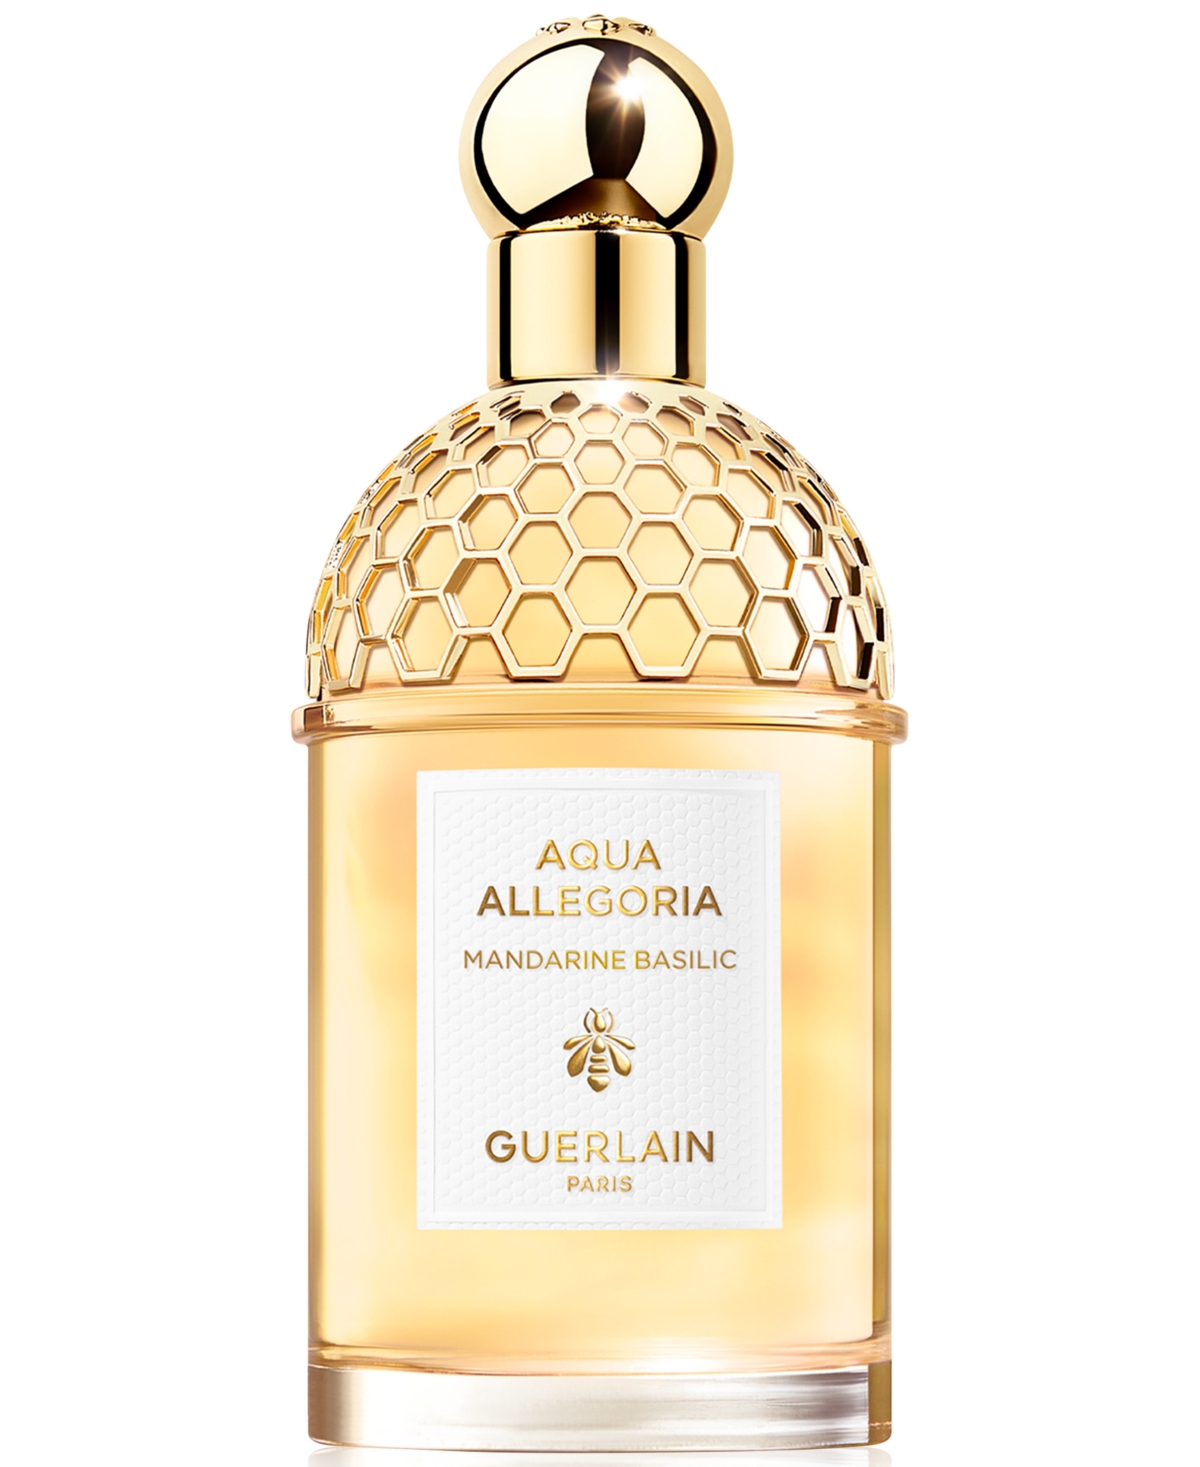 Guerlain Aqua Allegoria Mandarine Basilic Eau de Toilette, 4.2 oz.